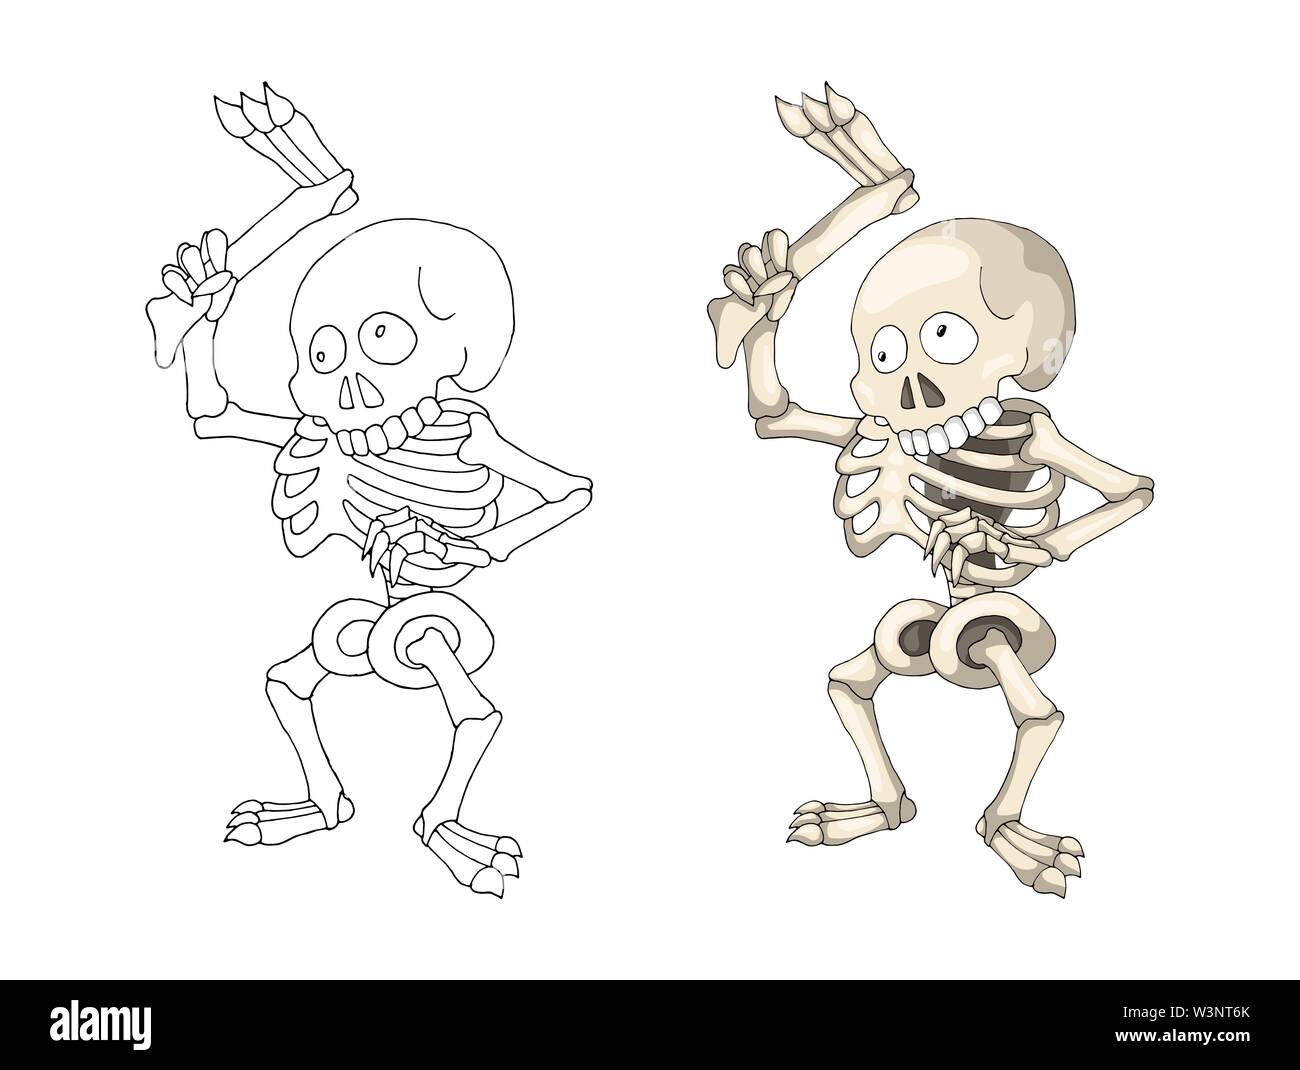 Squelette humain debout avec la jambe, personnage de la page livre de coloriage Illustration de Vecteur